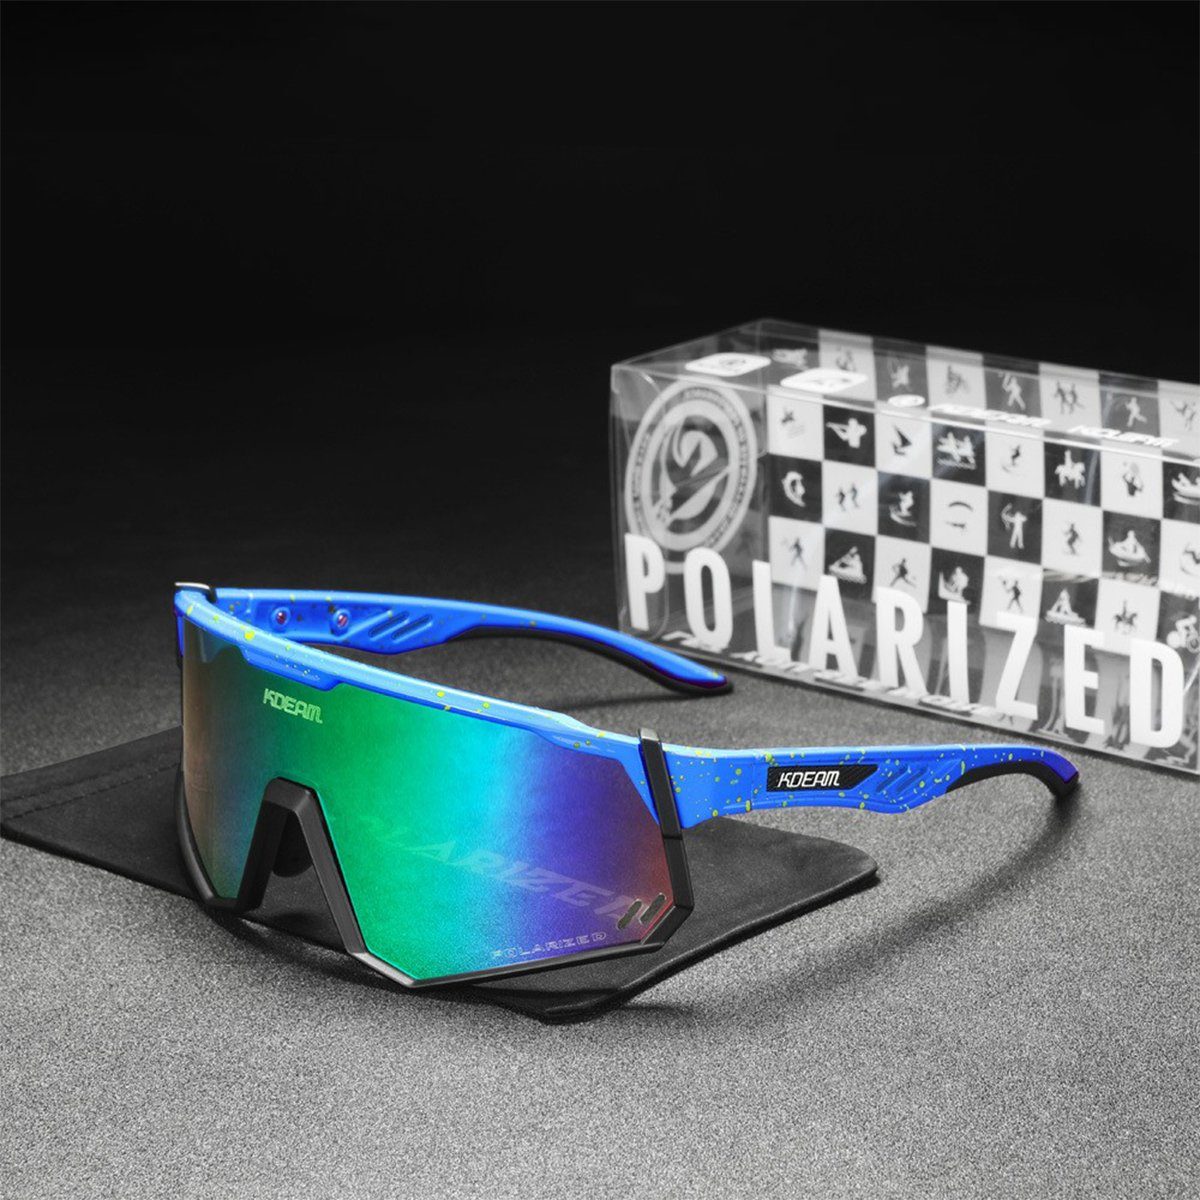 XDeer Sportbrille TR90 Polarisierte, Sportbrille Frame Polarisierte Unbreakable Sport C7 sonnenbrille Radsportbrille